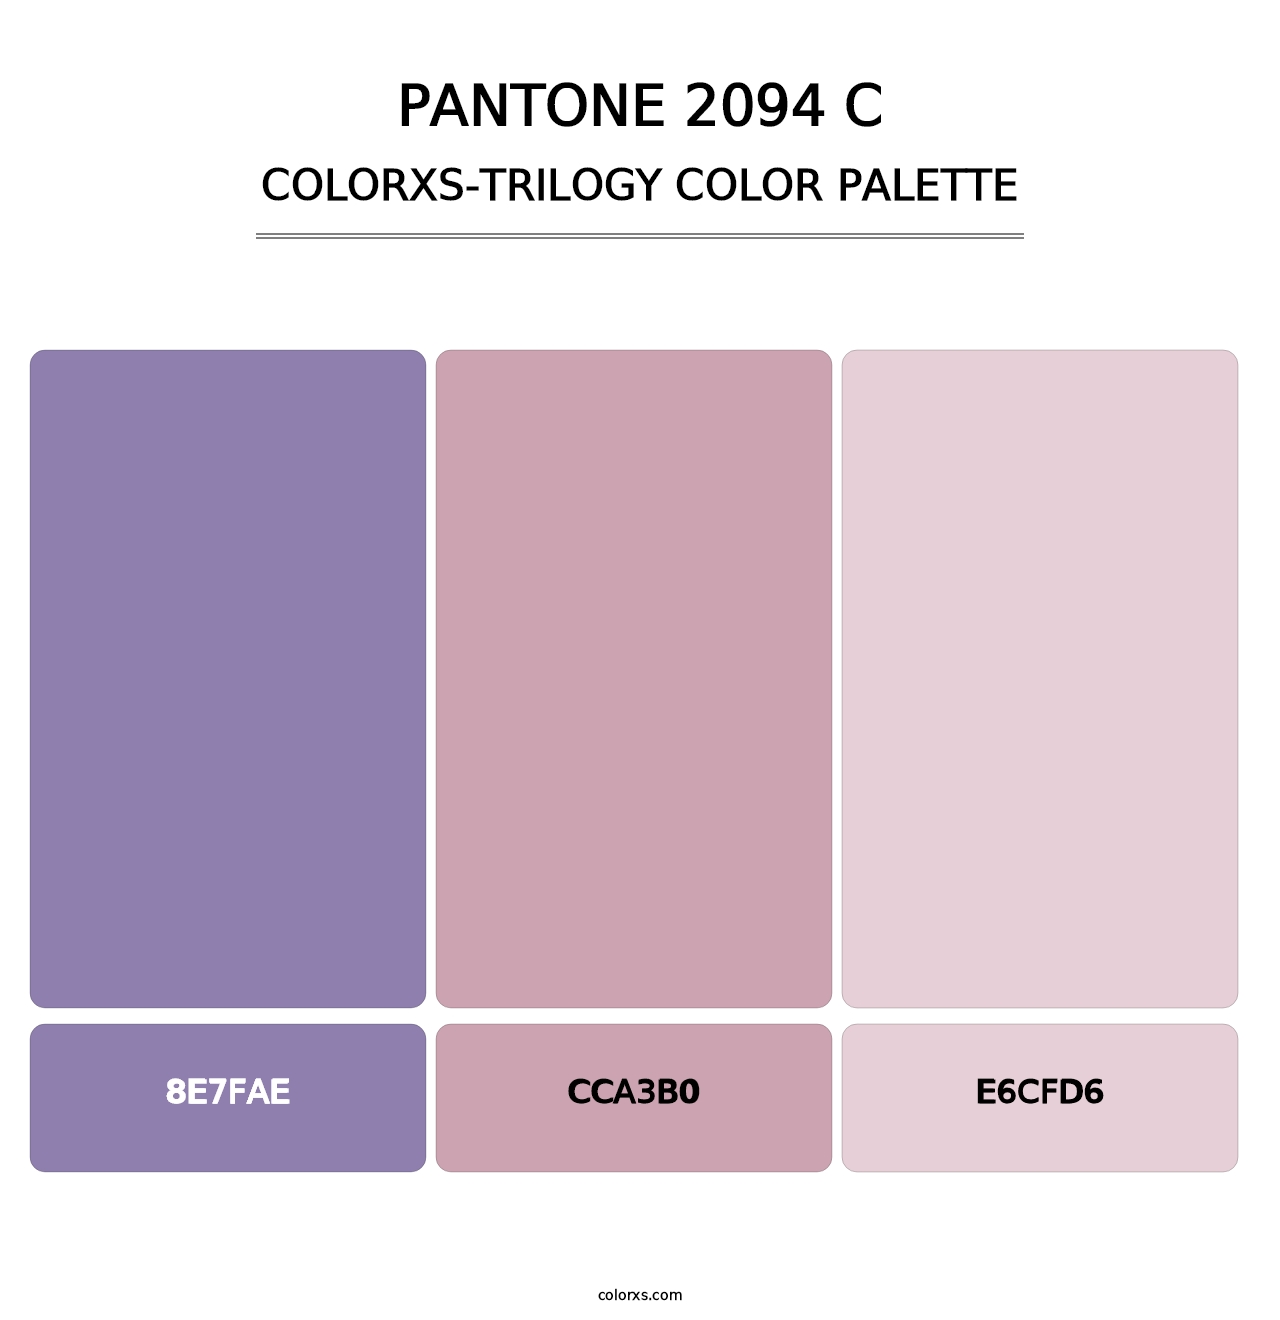 PANTONE 2094 C - Colorxs Trilogy Palette